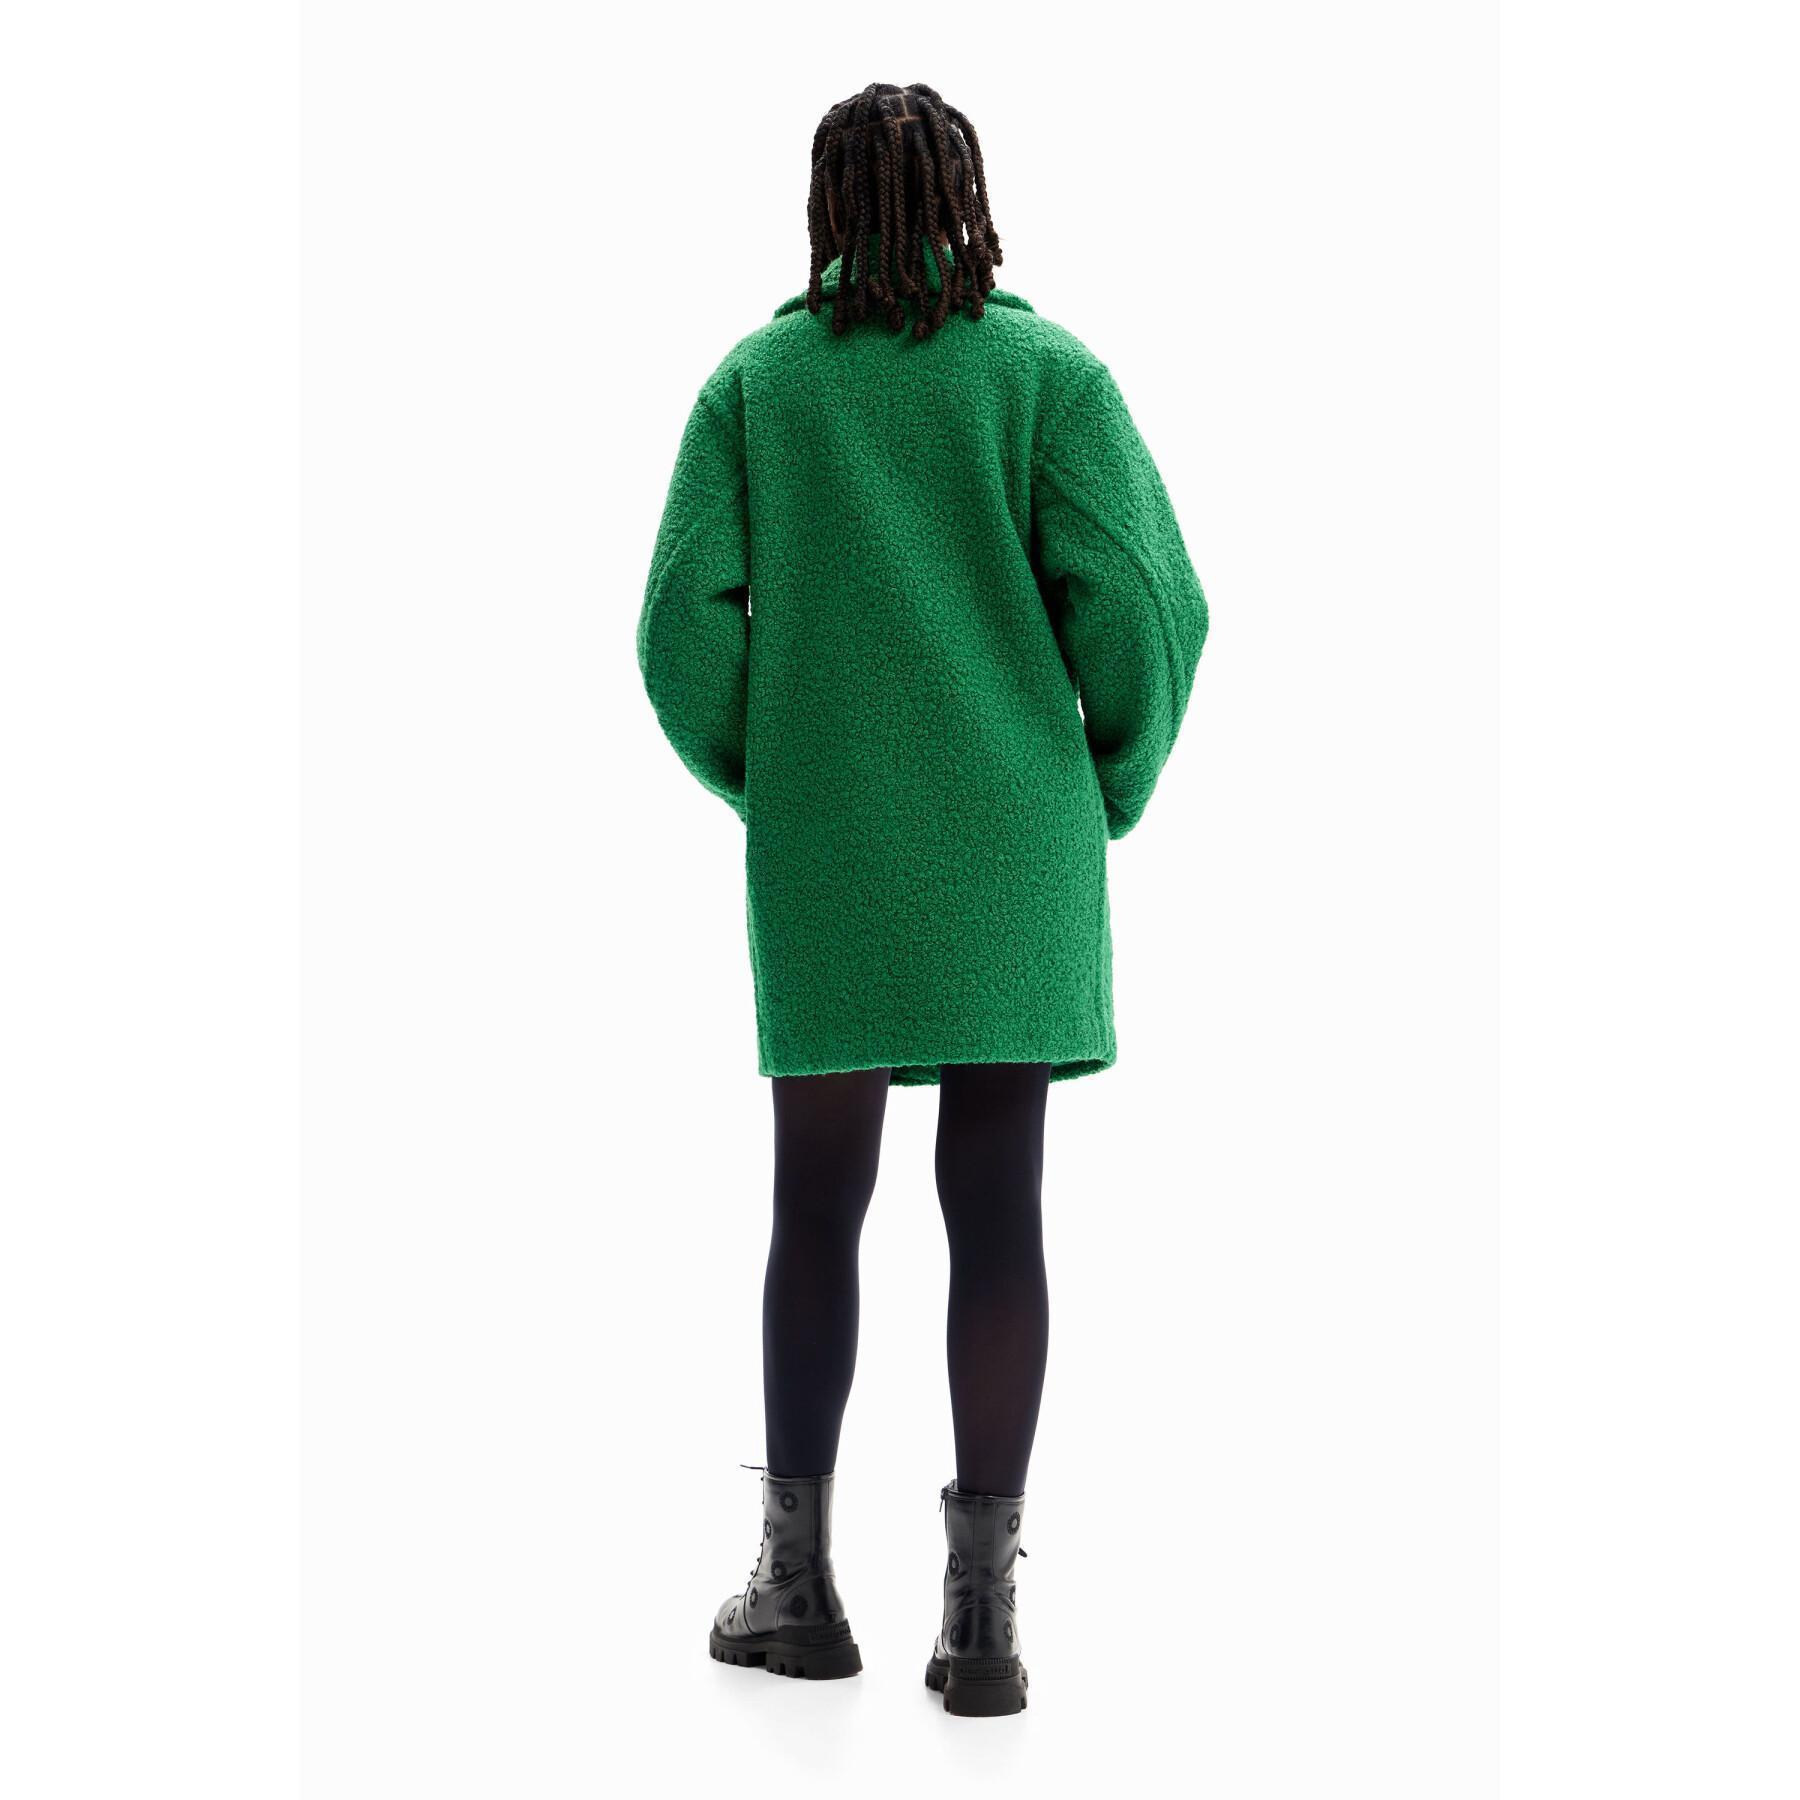 Women's coat Desigual London